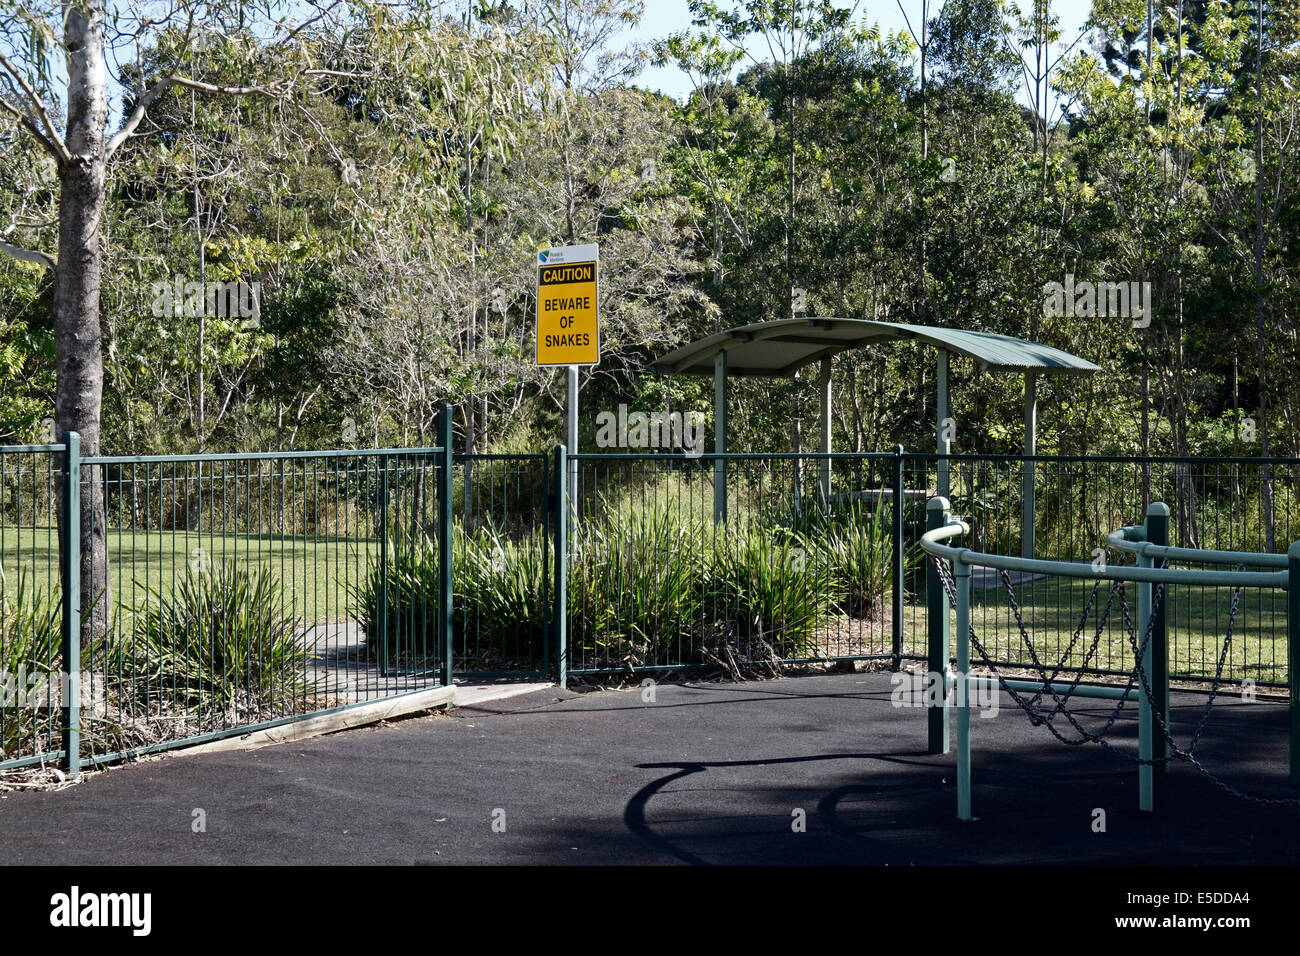 Route de pique-nique sur l'autoroute du Pacifique avec une aire de jeux pour enfants et une attention aux serpents signer , Australie Banque D'Images